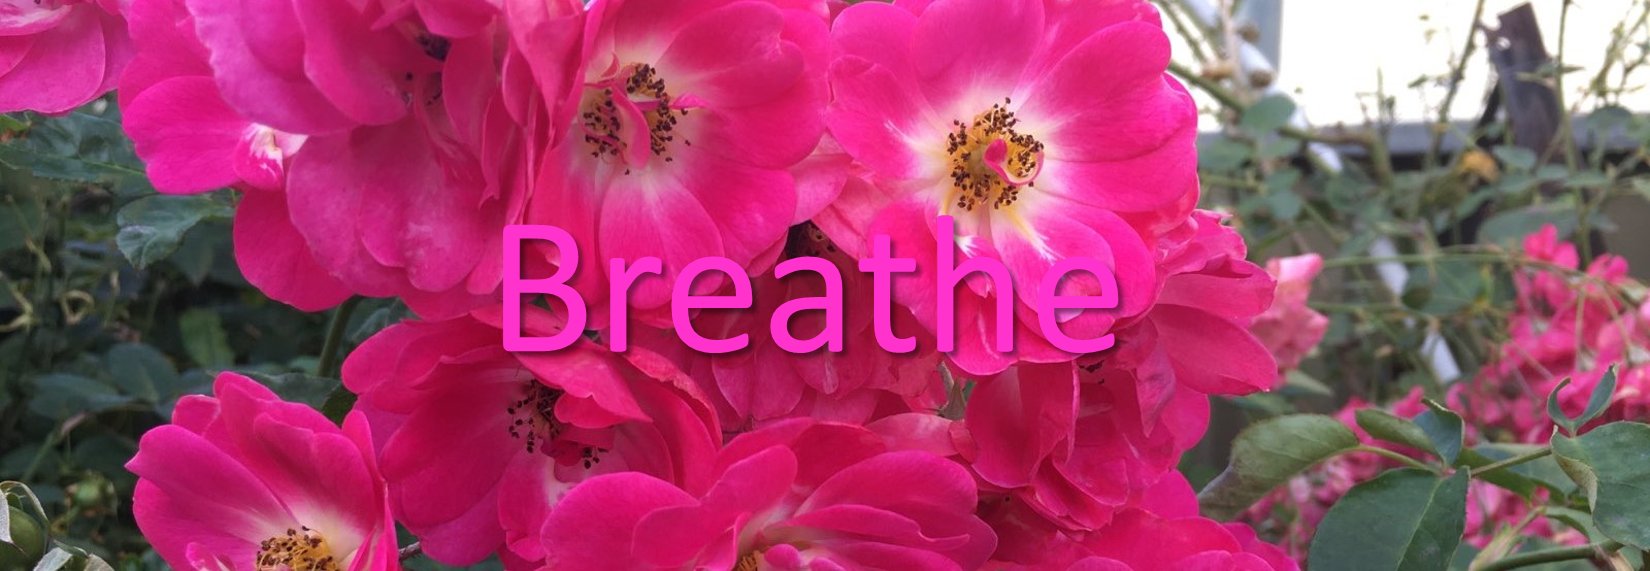 Breathe3